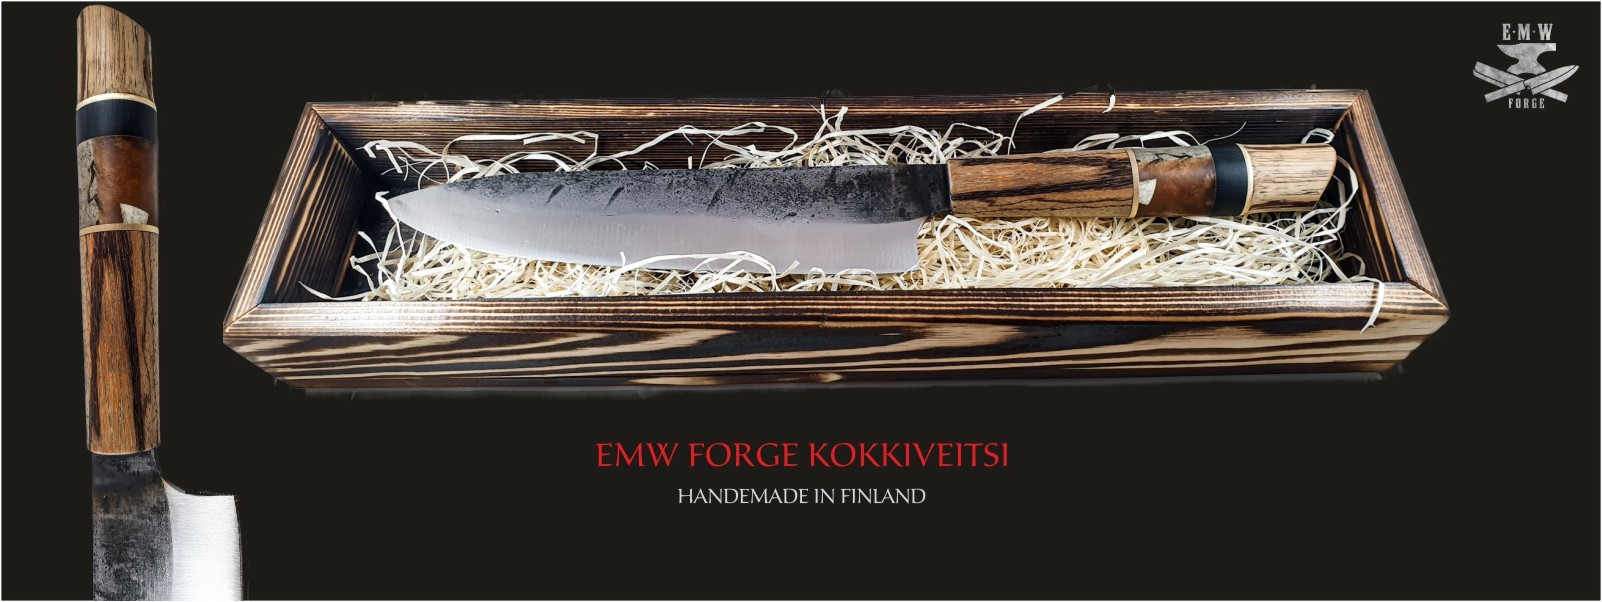 EMW Forge